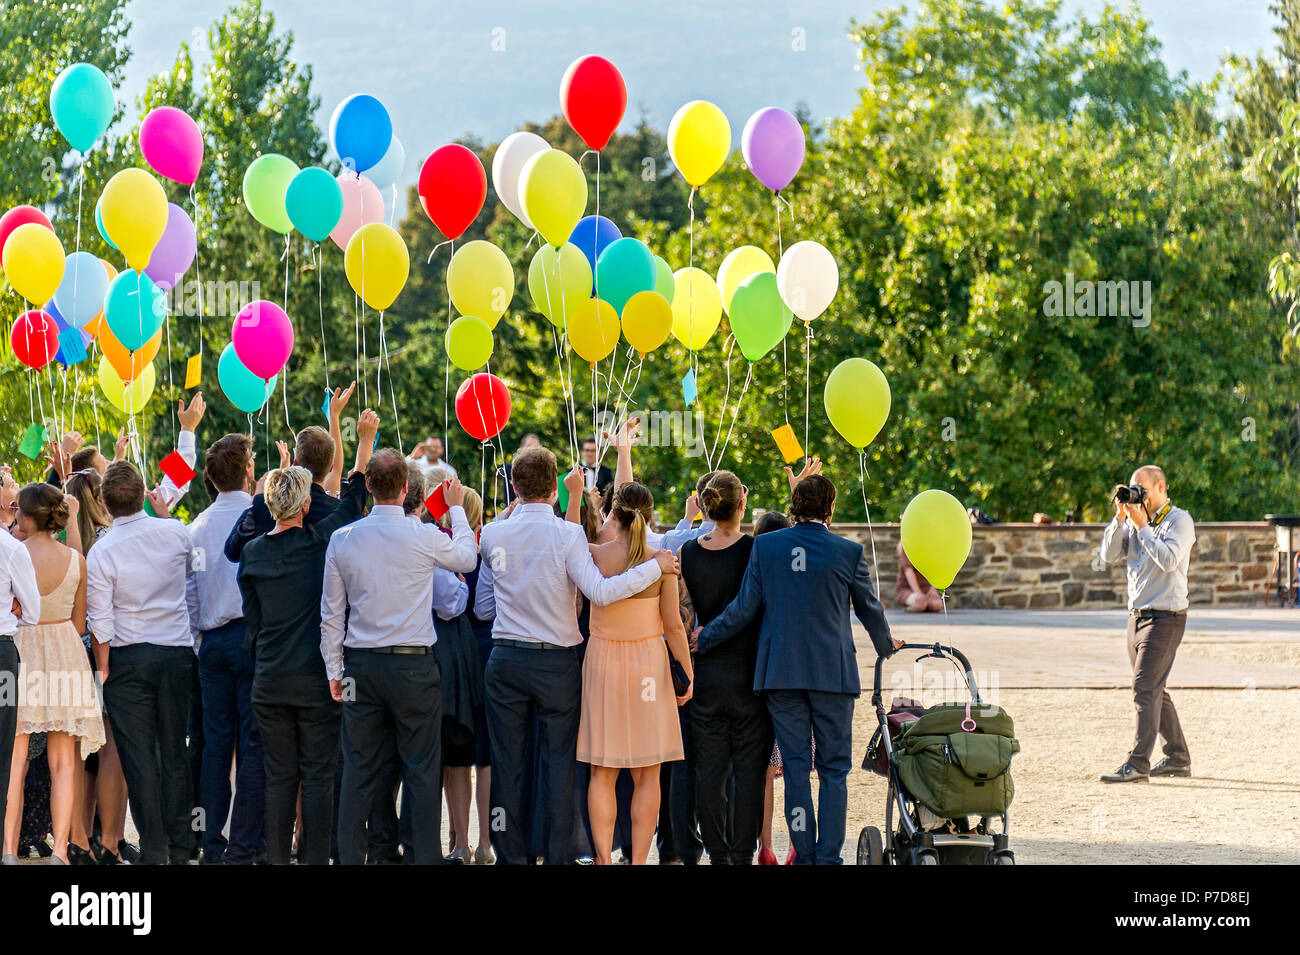 Photographe prend des photos d'un rassemblement festif avec des ballons colorés, Bad Homburg vor der Höhe, Hesse, Allemagne Banque D'Images